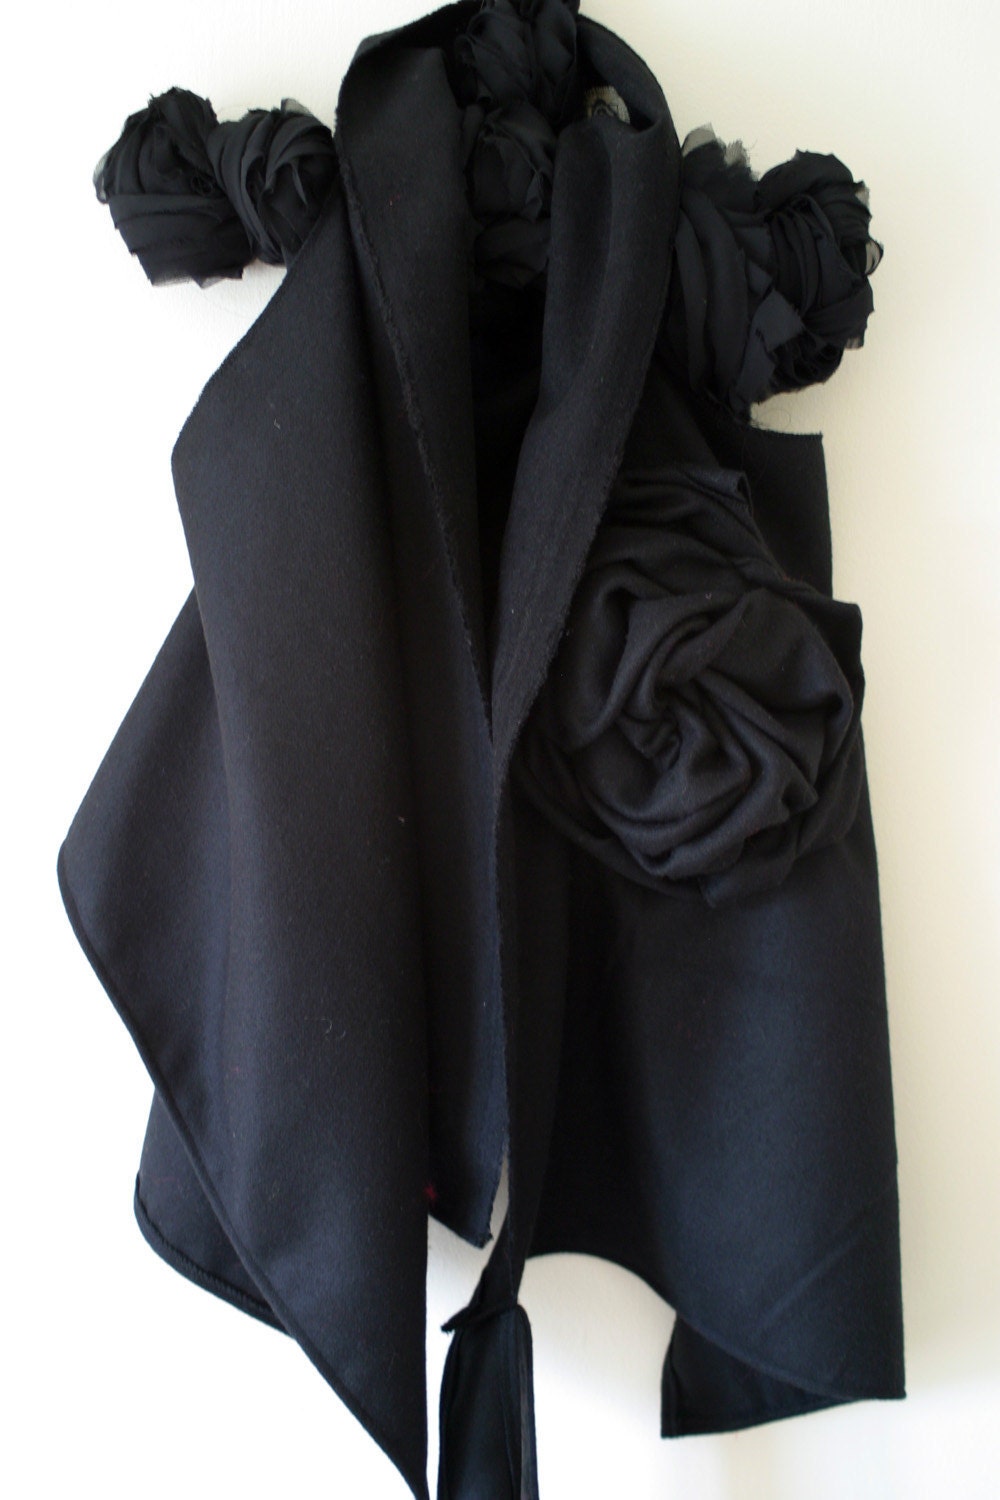 Black Wool Wrap/ Sleeveless Winter Soft Jacket by NervousWardrobe on Etsy